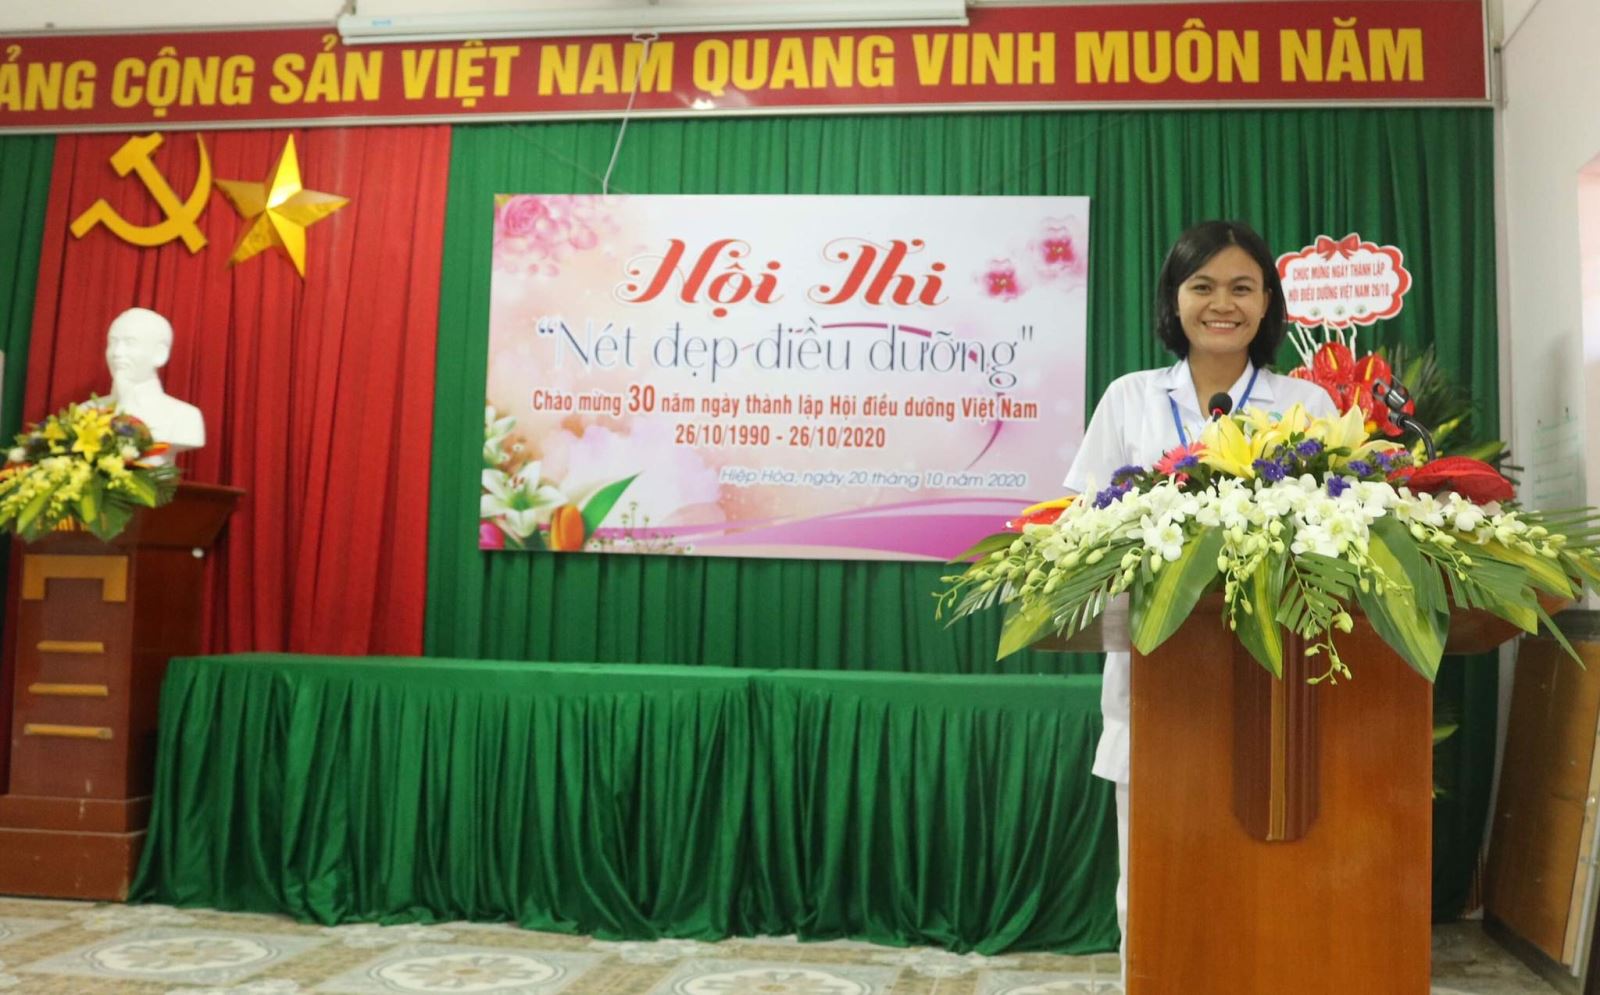 Đồng chí: Nguyễn Thị Chung - Điều dưỡng trưởng Trung tâm Y tế huyện Hiệp Hòa phát biểu tại hội thi